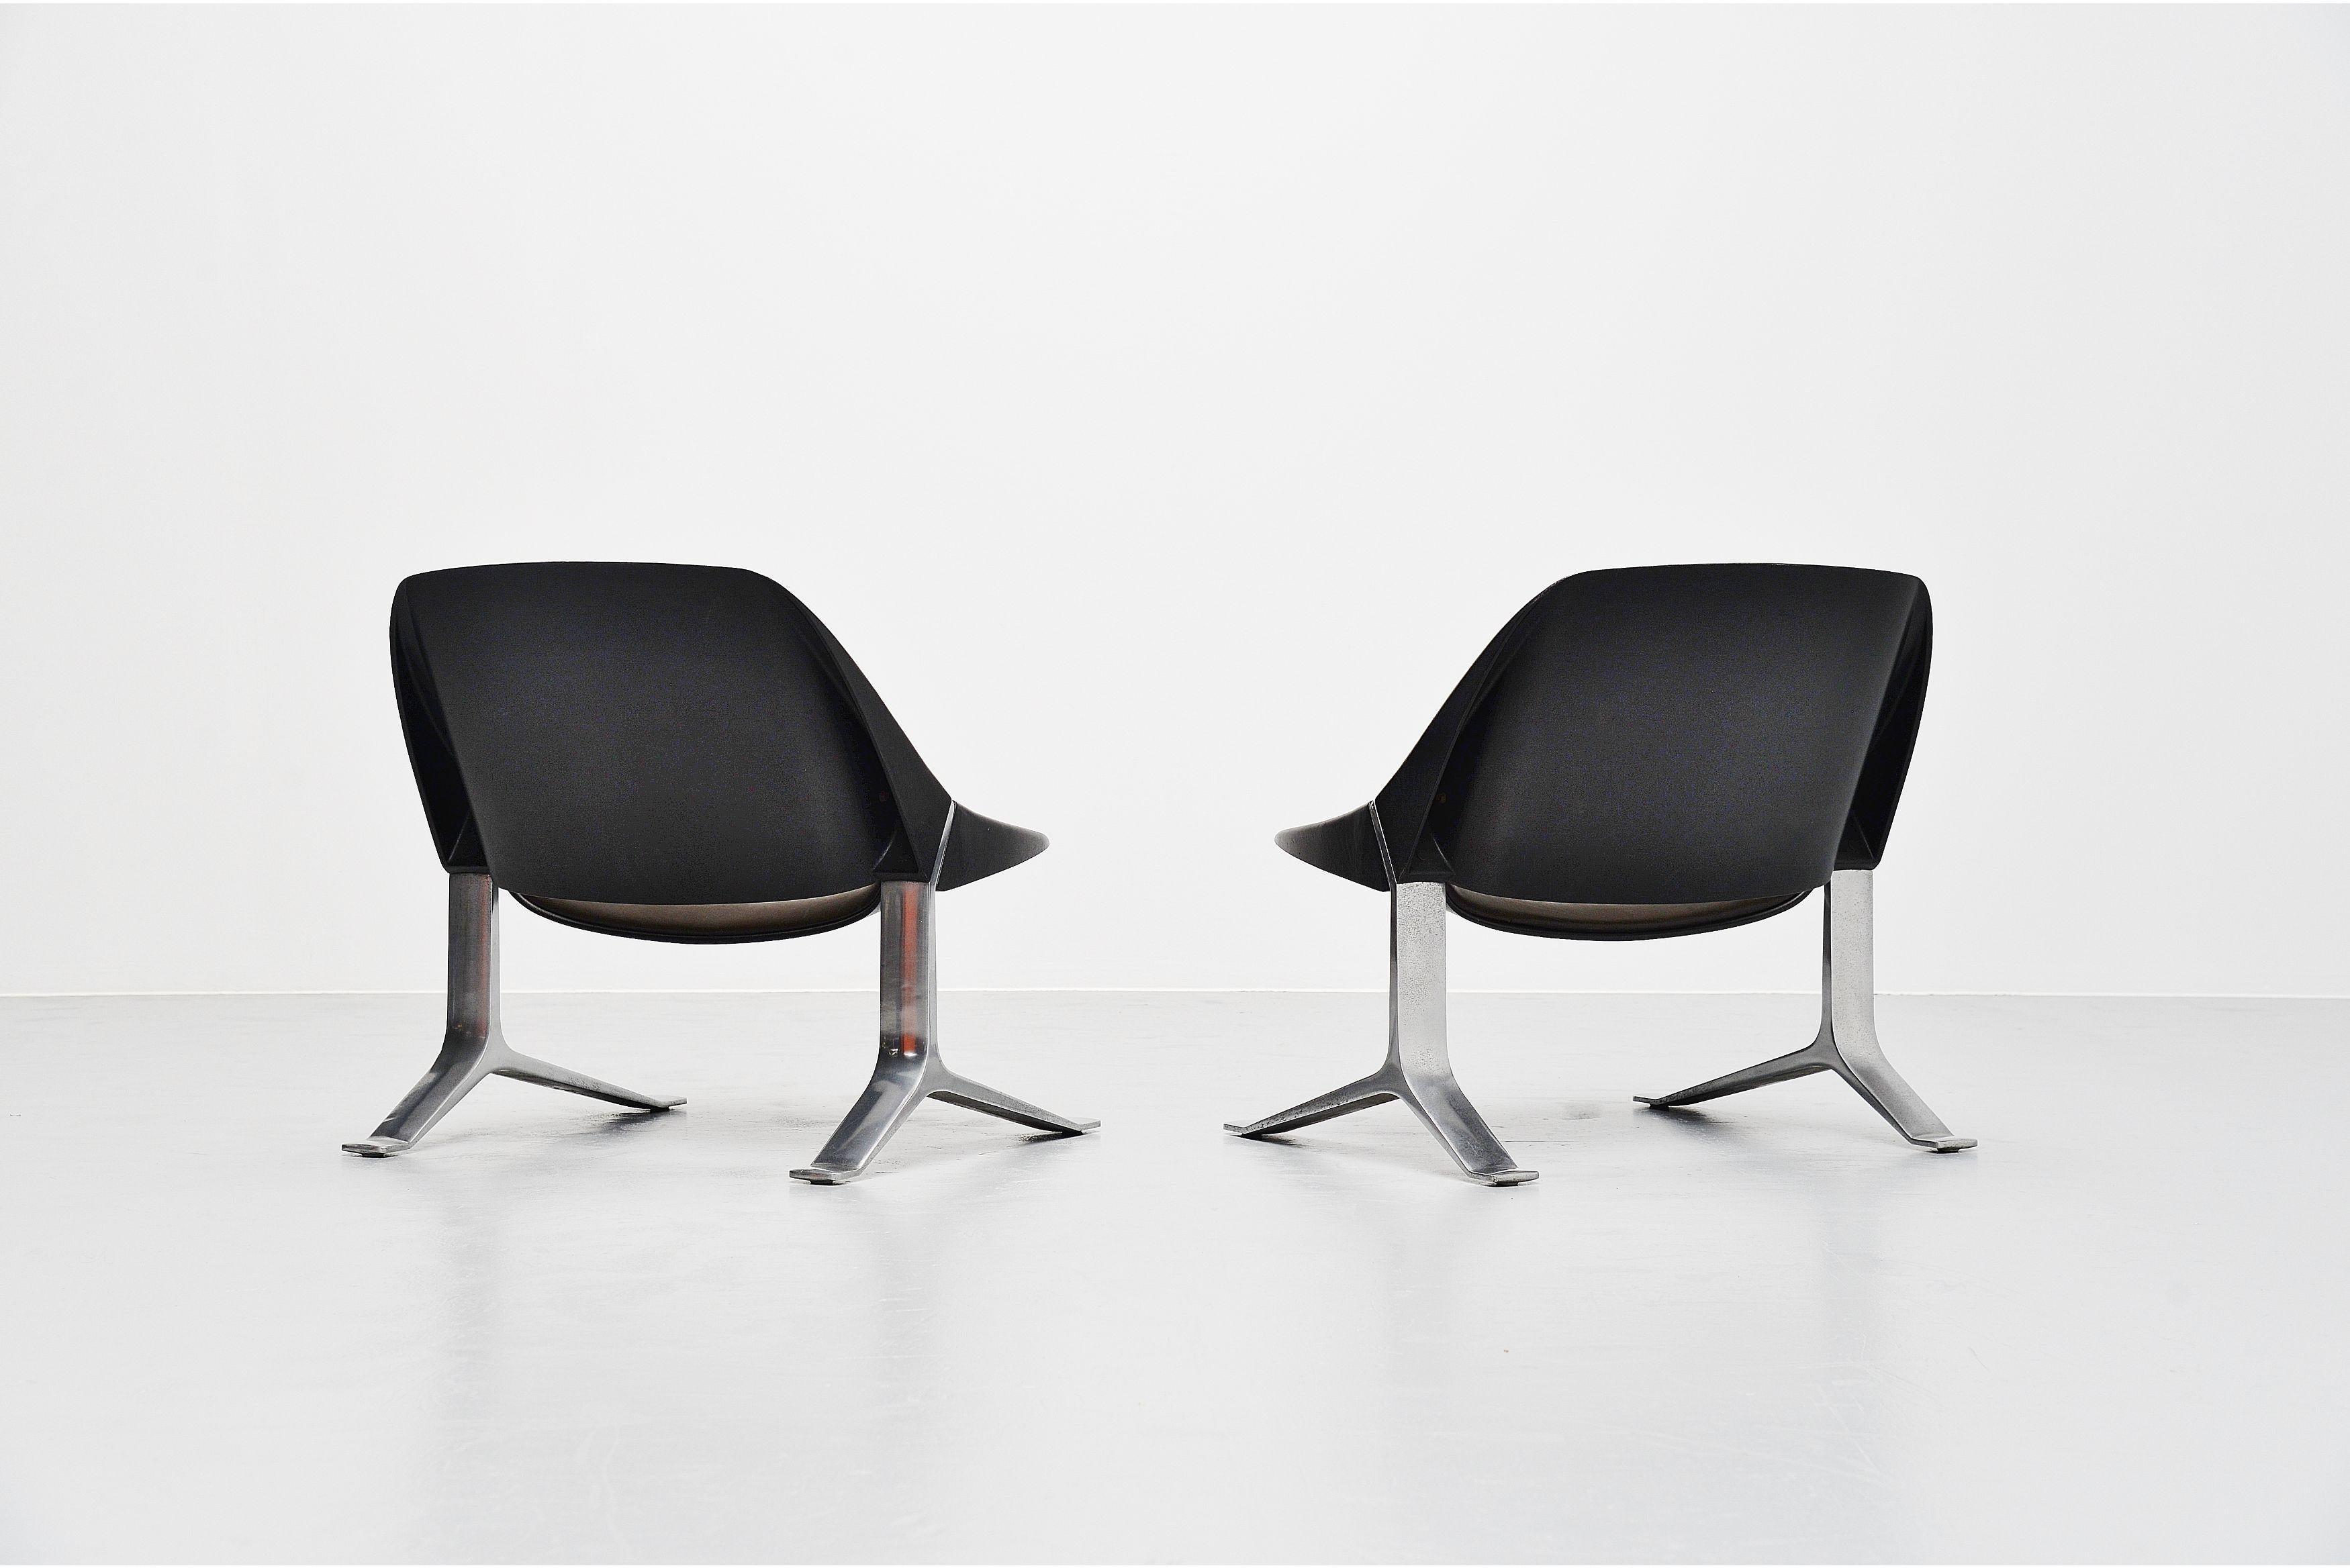 Rare paire de chaises longues sculpturales conçues par Knut Hesterberg et fabriquées par Selectform Furniture, Allemagne 1971. Les chaises ont des pieds solides en aluminium moulé et des sièges en plastique moulé recouverts de cuir vert